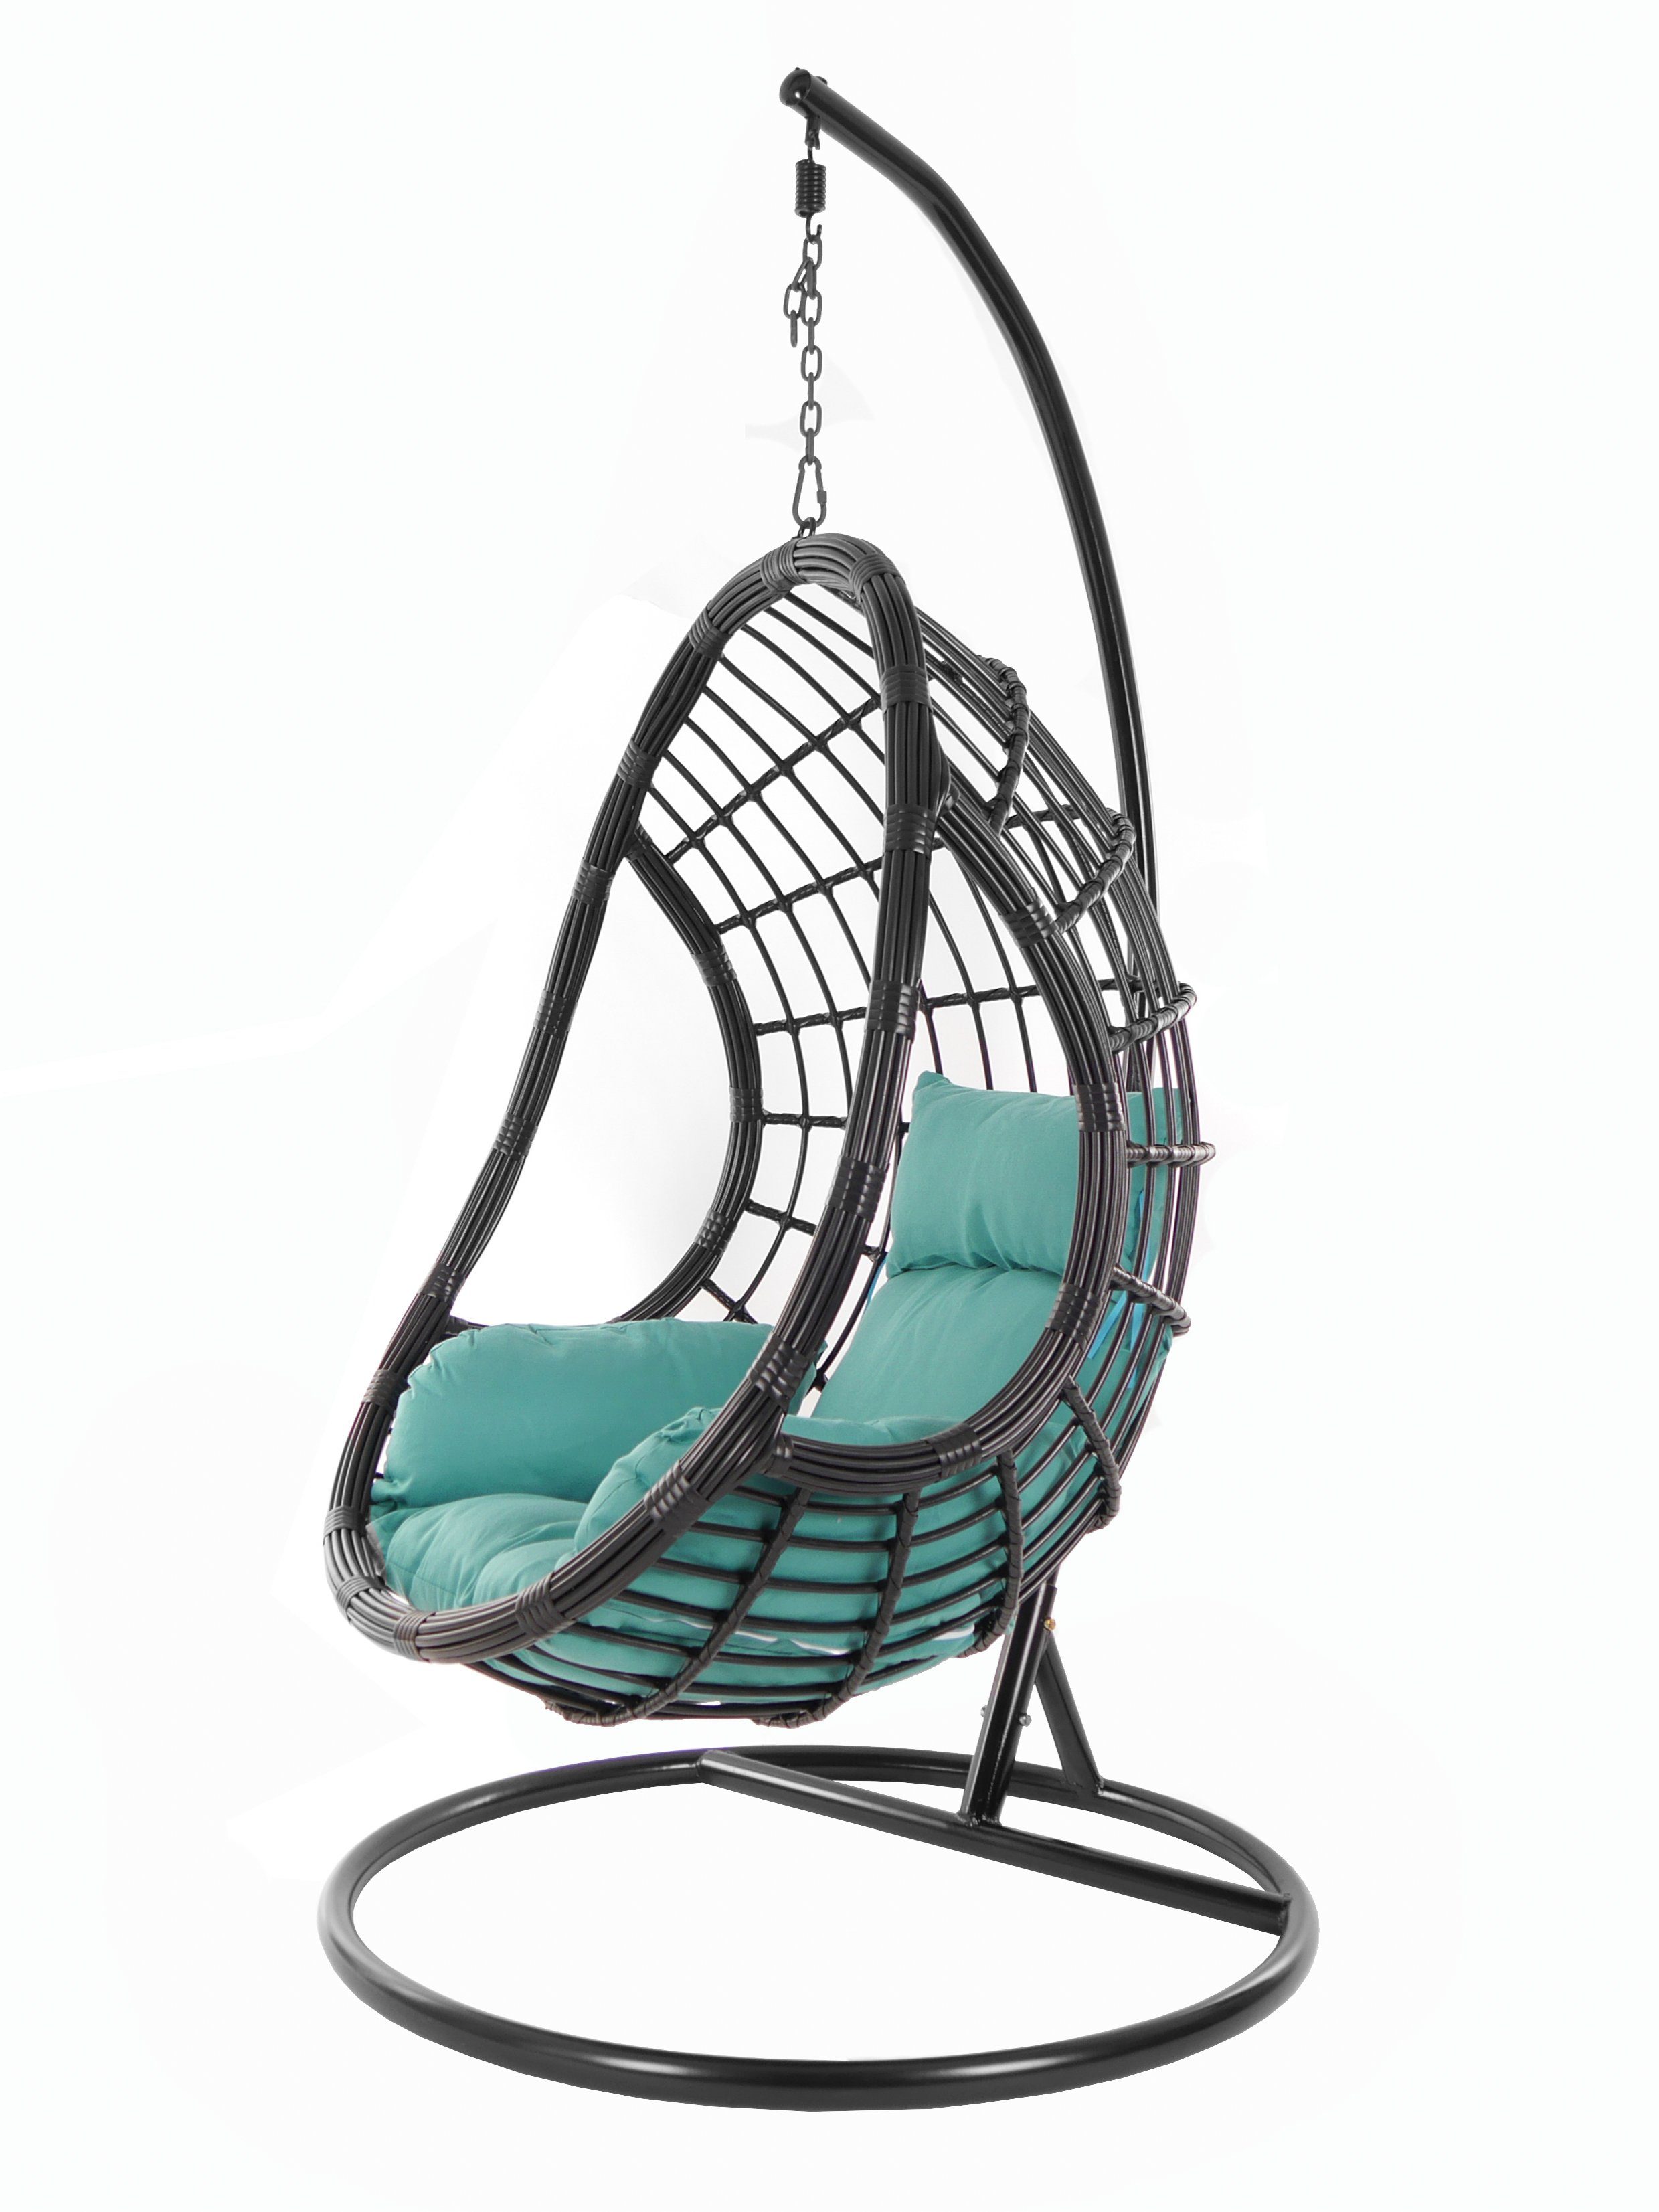 KIDEO Hängesessel PALMANOVA black, Schwebesessel, Swing Chair, Hängesessel mit Gestell und Kissen, Nest-Kissen meeresblau (5060 ocean)